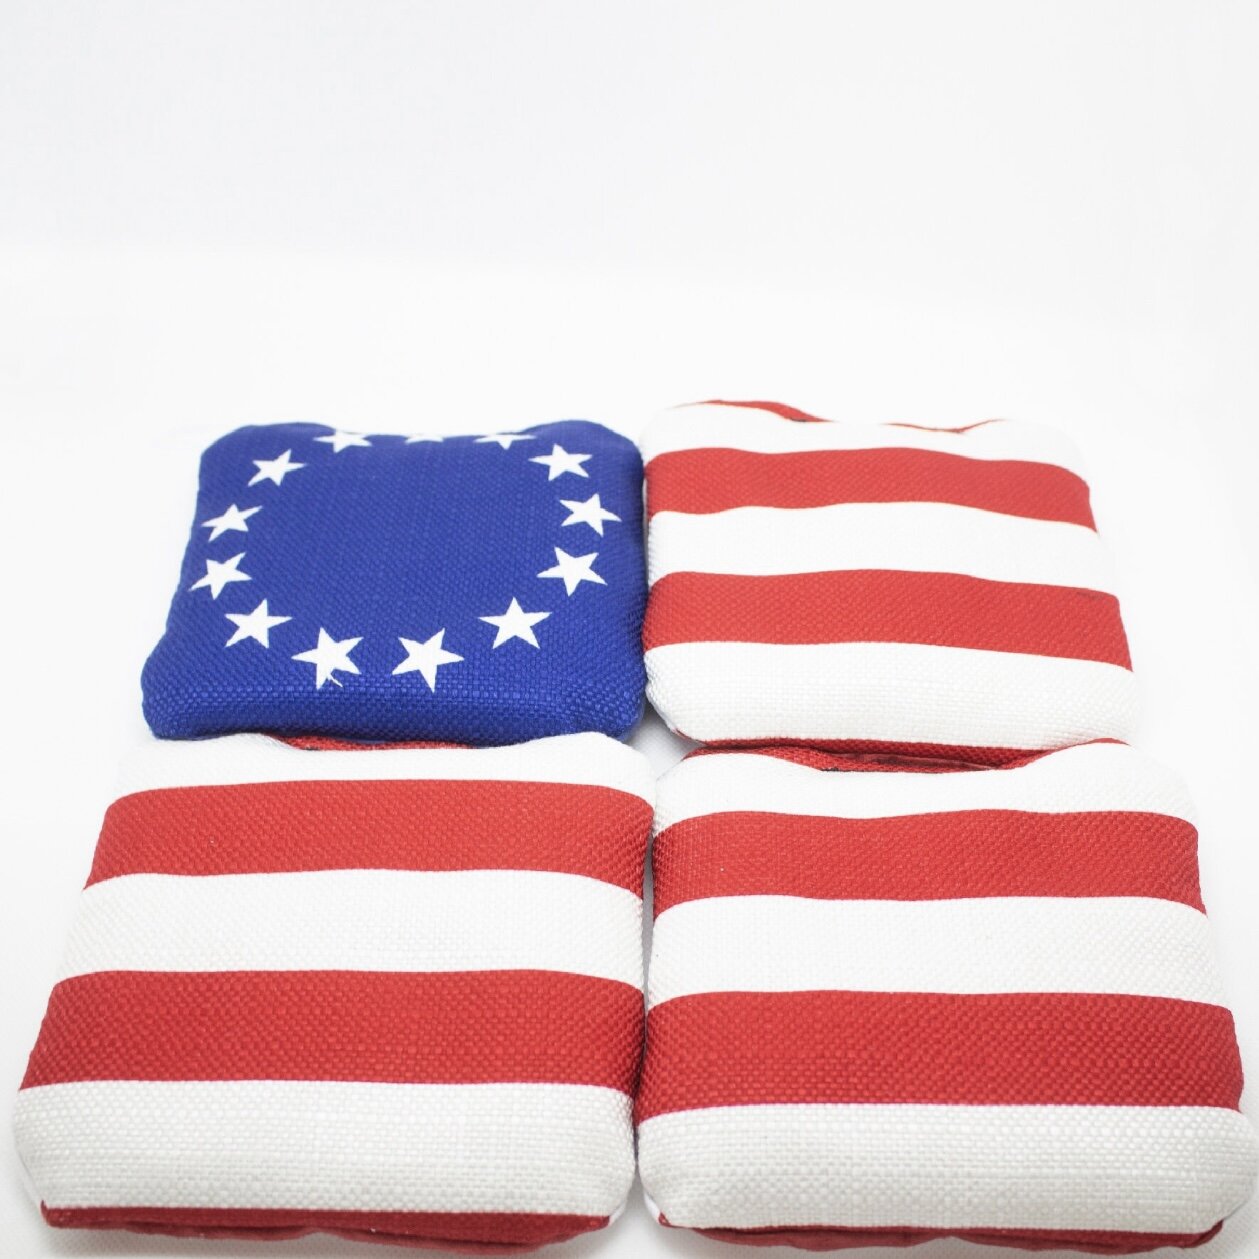 Stick 'n Slick Bags: Betsy Ross 13 Stars & Bars American Flag